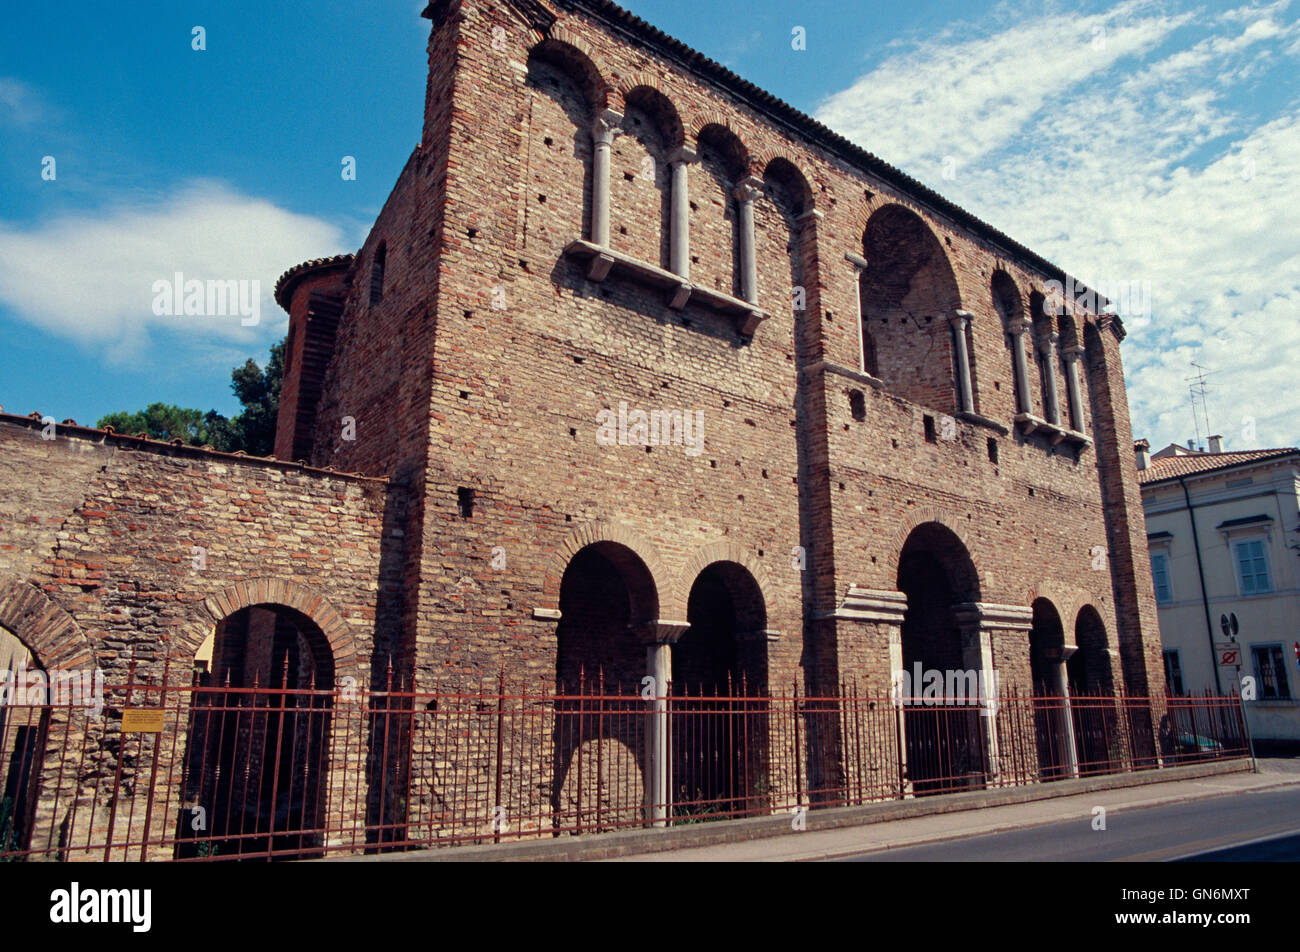 Italy, Emilia Romagna, Ravenna, Palazzo di Teodorico, Palace of Theodoric Stock Photo